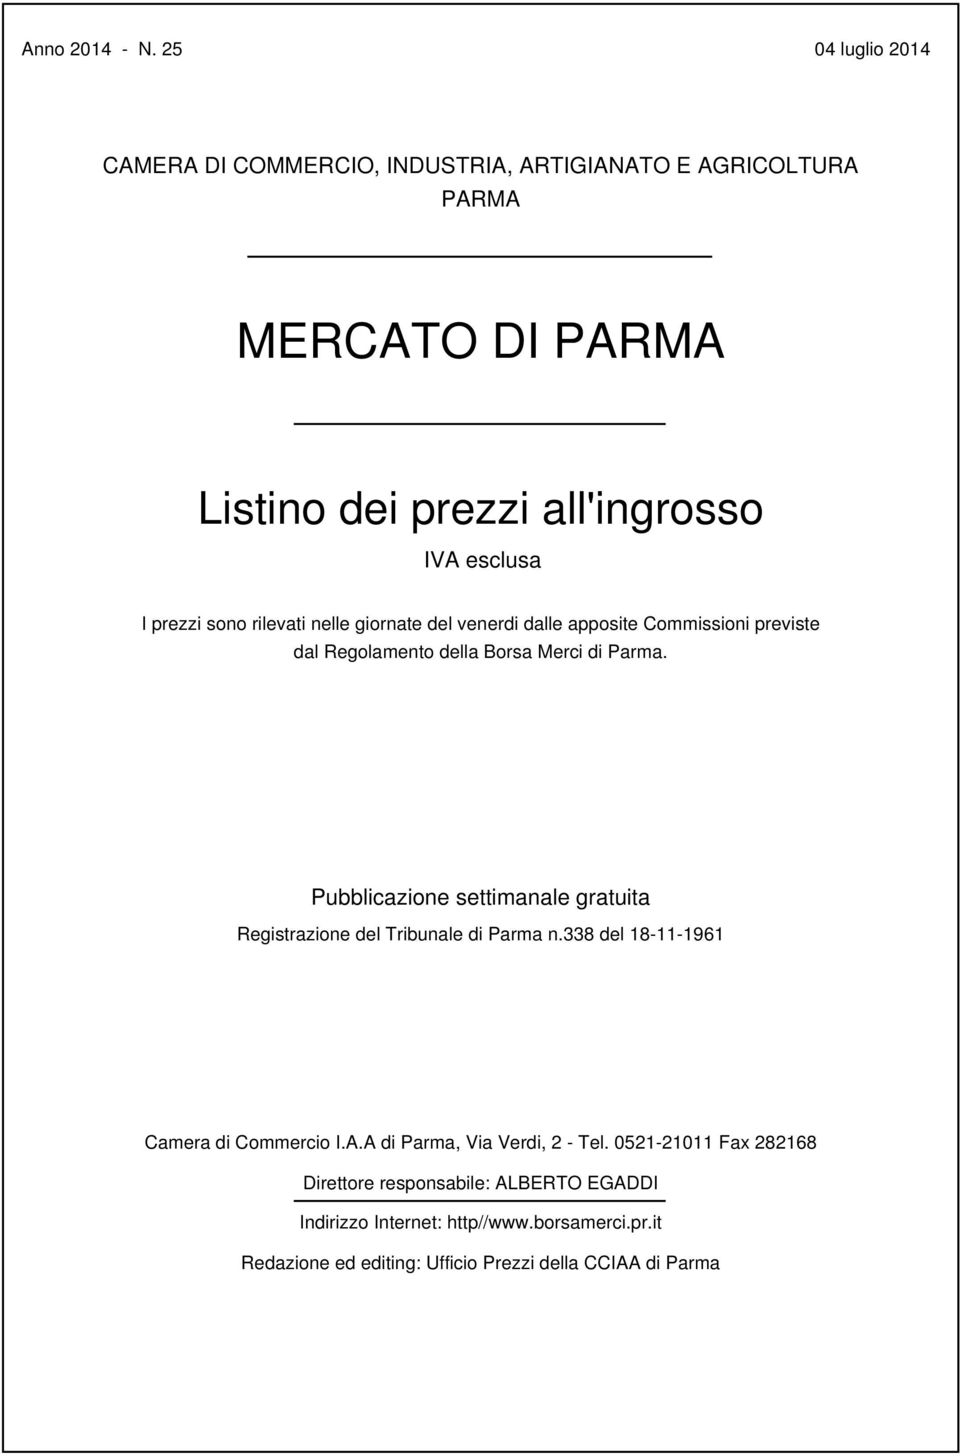 prezzi sono rilevati nelle giornate del venerdi dalle apposite Commissioni previste dal Regolamento della Borsa Merci di Parma.